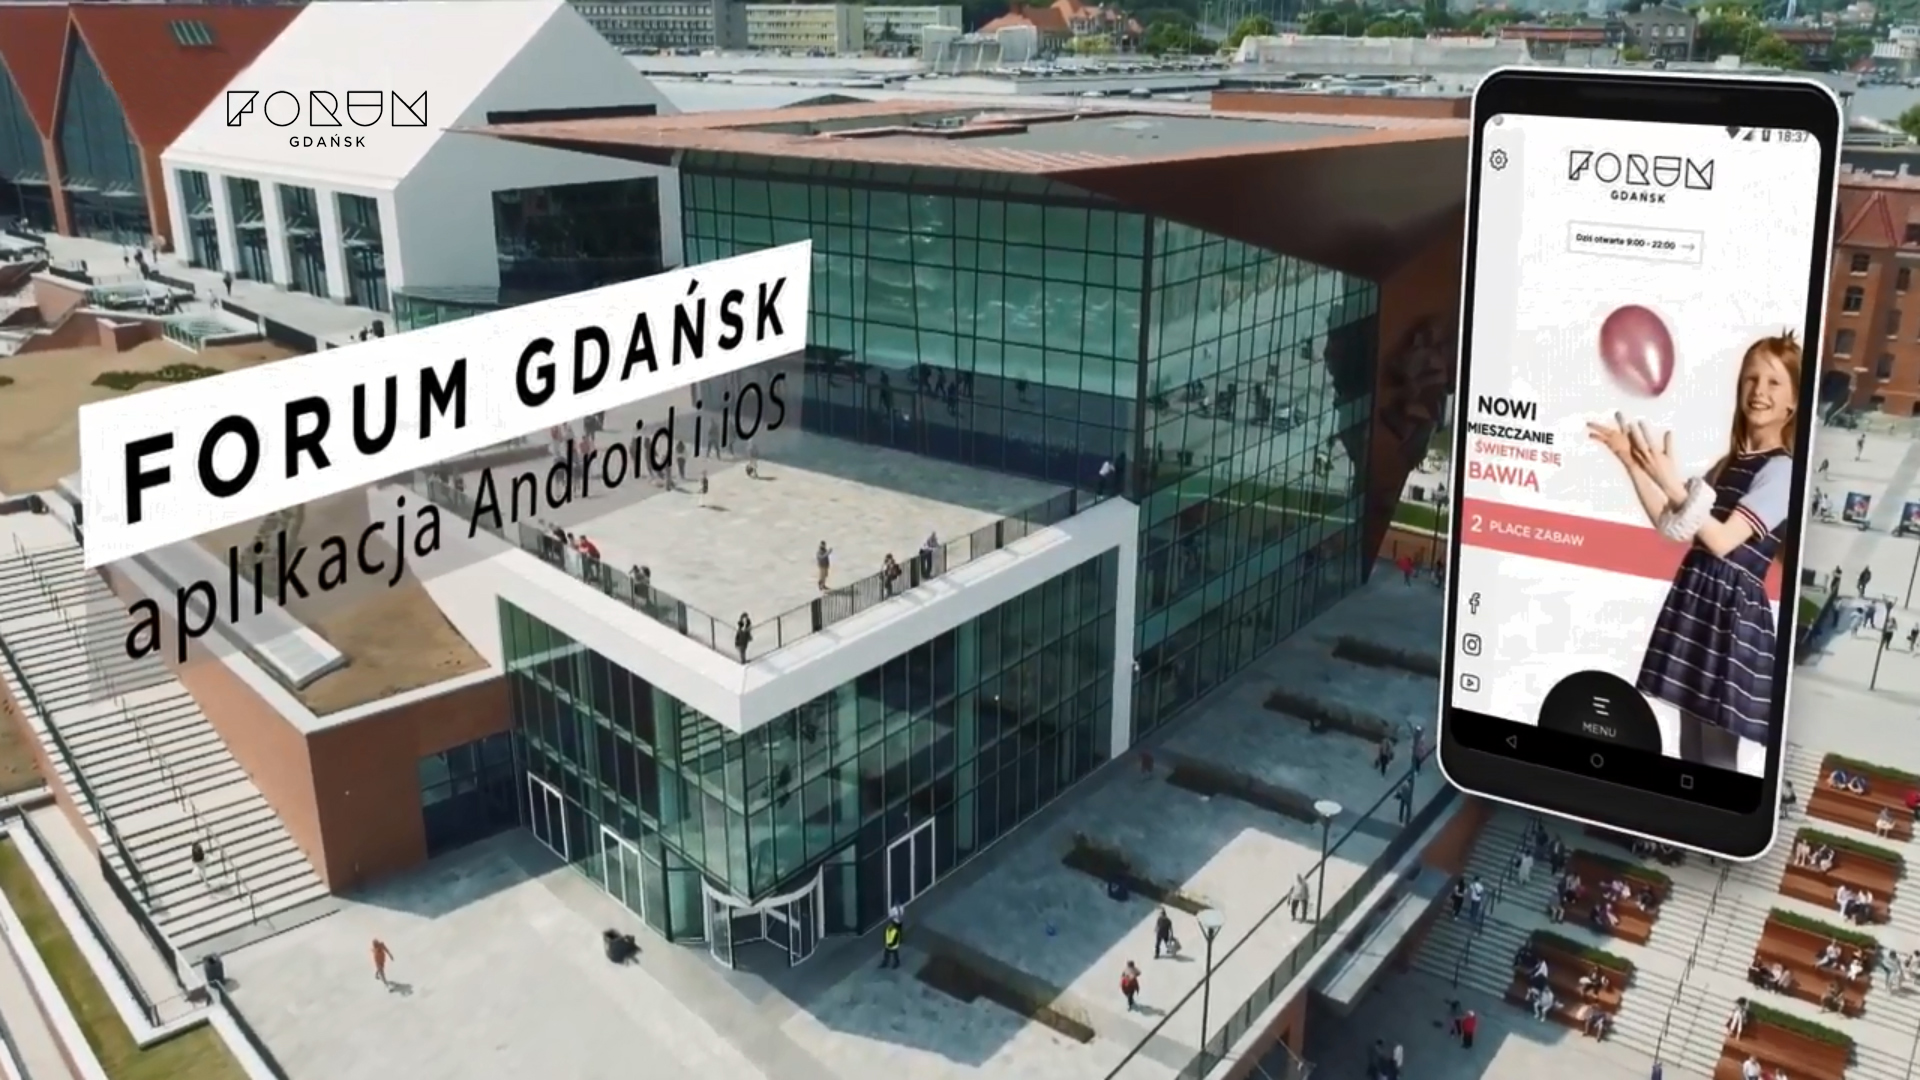 image of Forum Gdansk | Amistad Sp z o.o. Wins 2018 Best Shopping Mobile Application Mobile WebAward for Forum Gdansk - mobile app